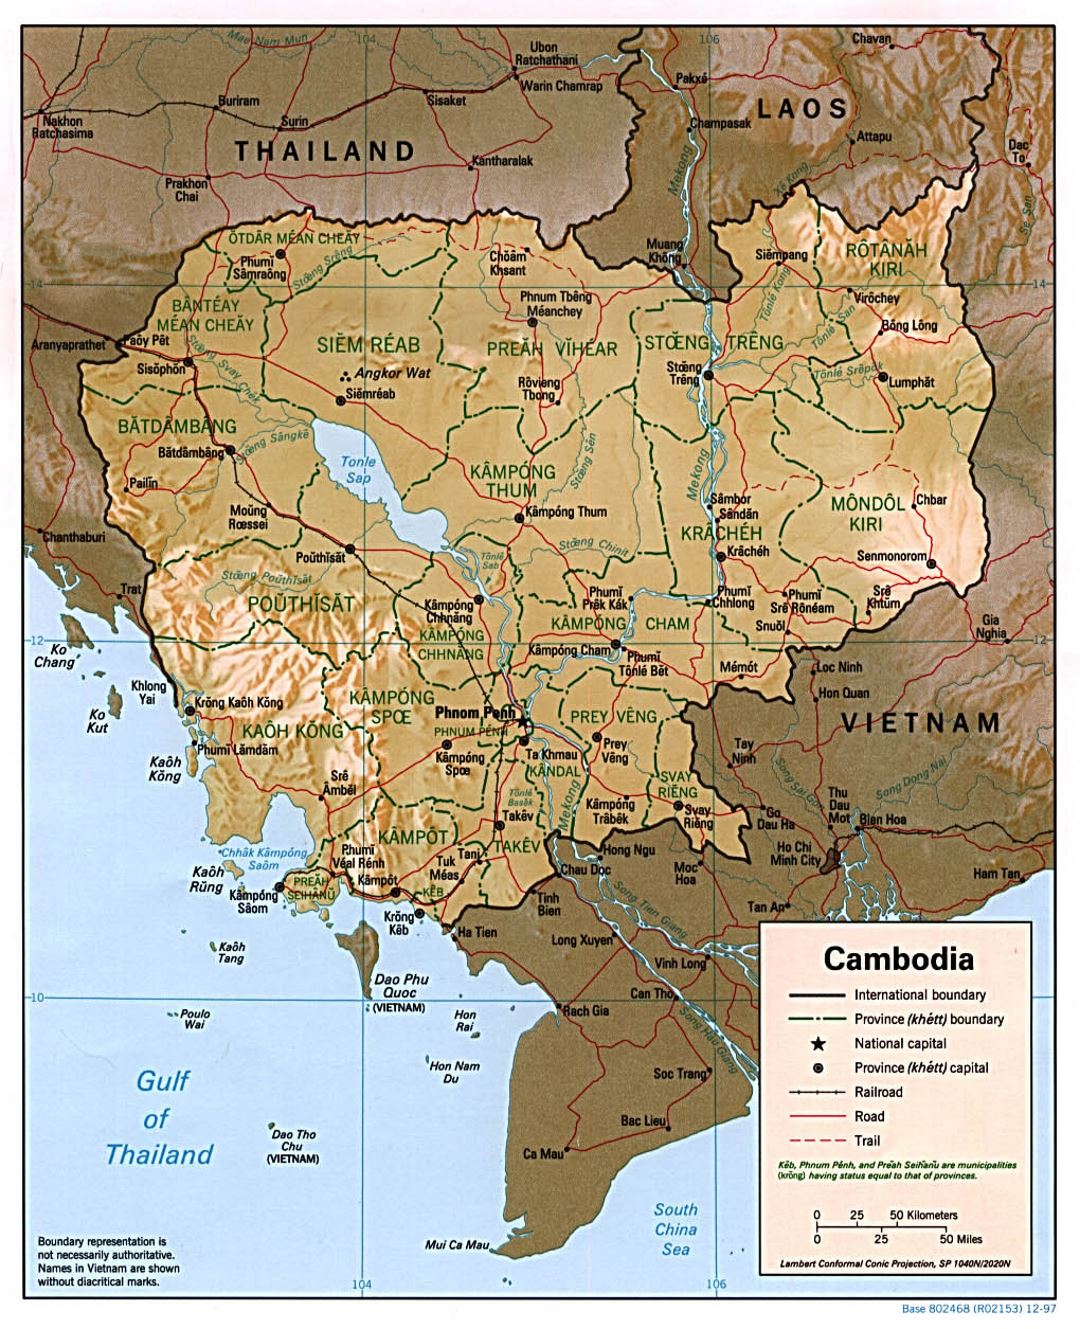 Detallado mapa político y administrativo de Camboya con relieve, carreteras, ferrocarriles y principales ciudades - 1997